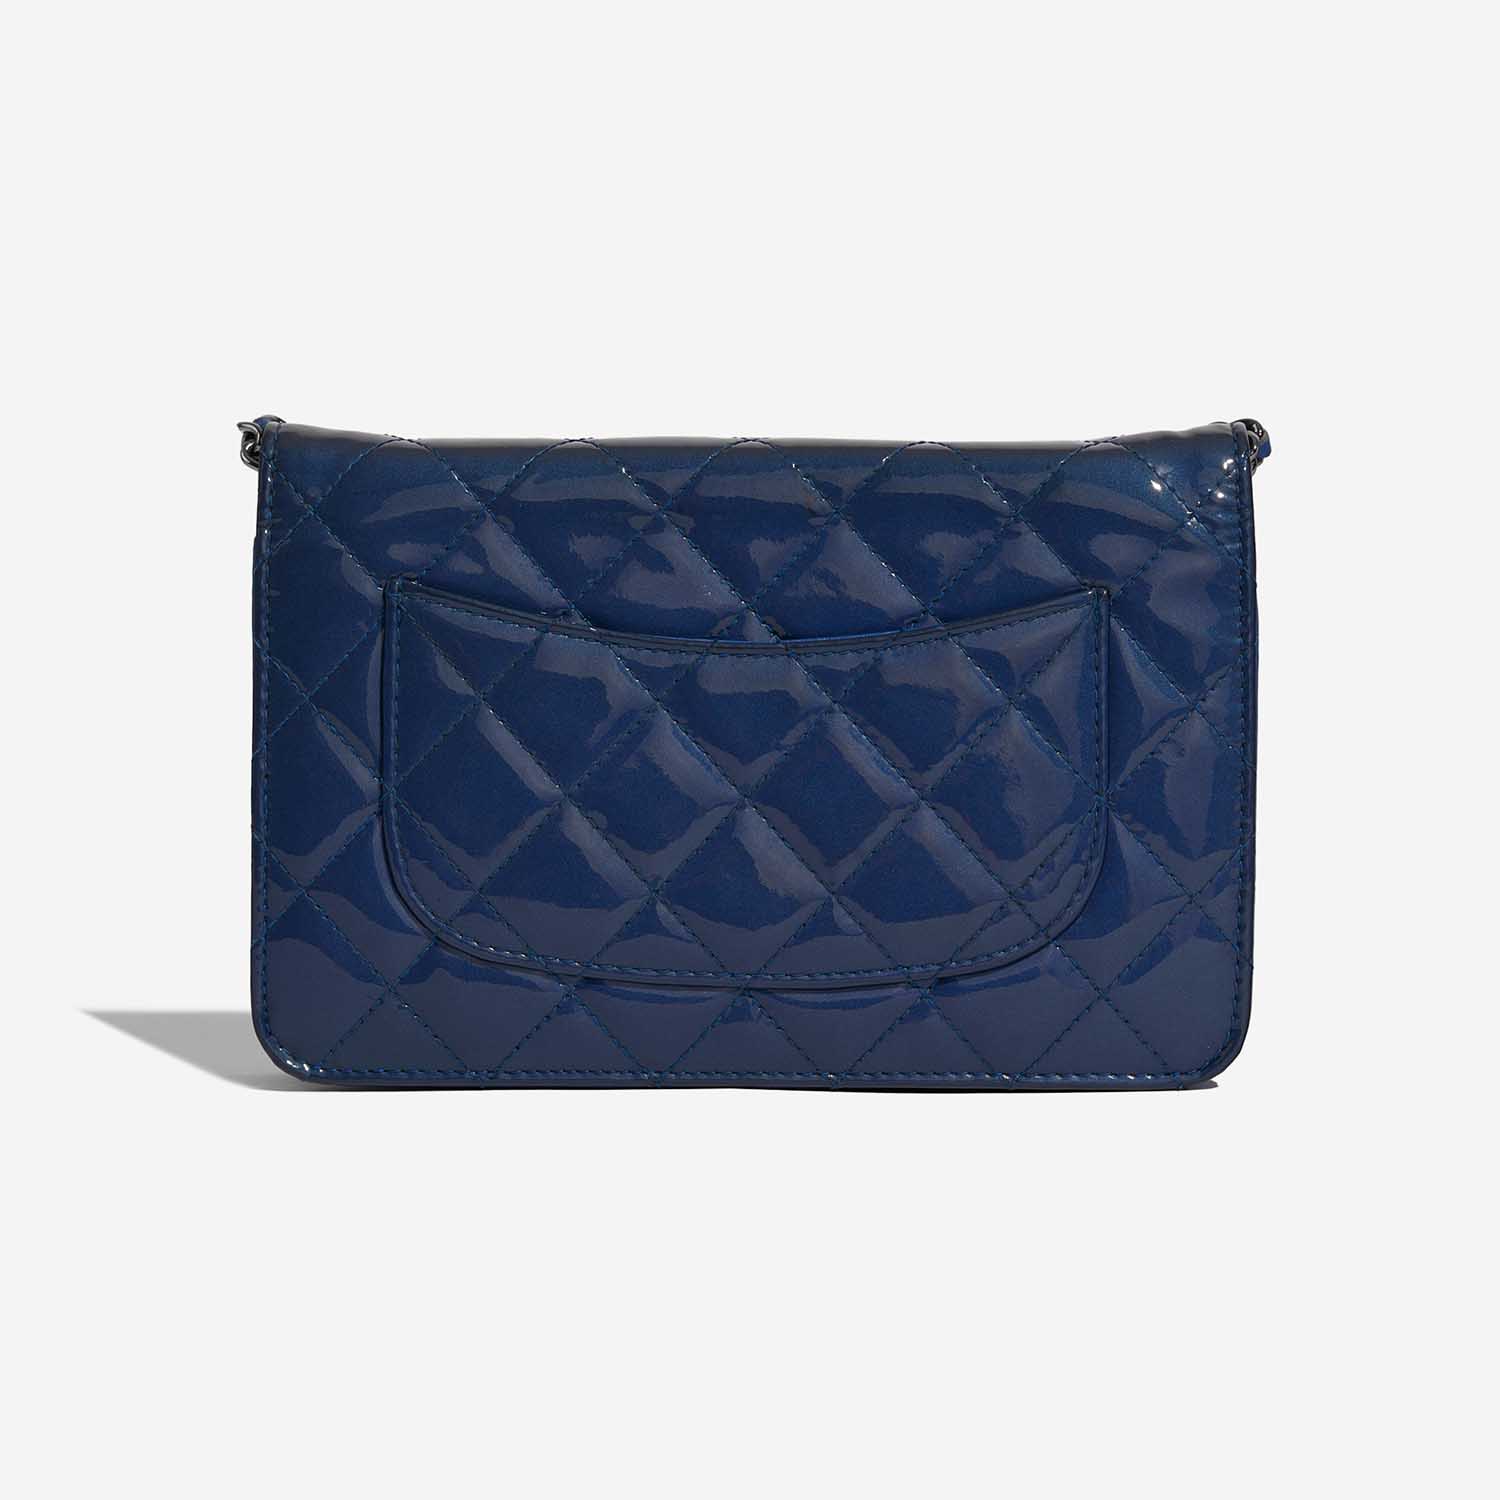 Chanel Timeless WOC Blau 5B S | Verkaufen Sie Ihre Designer-Tasche auf Saclab.com